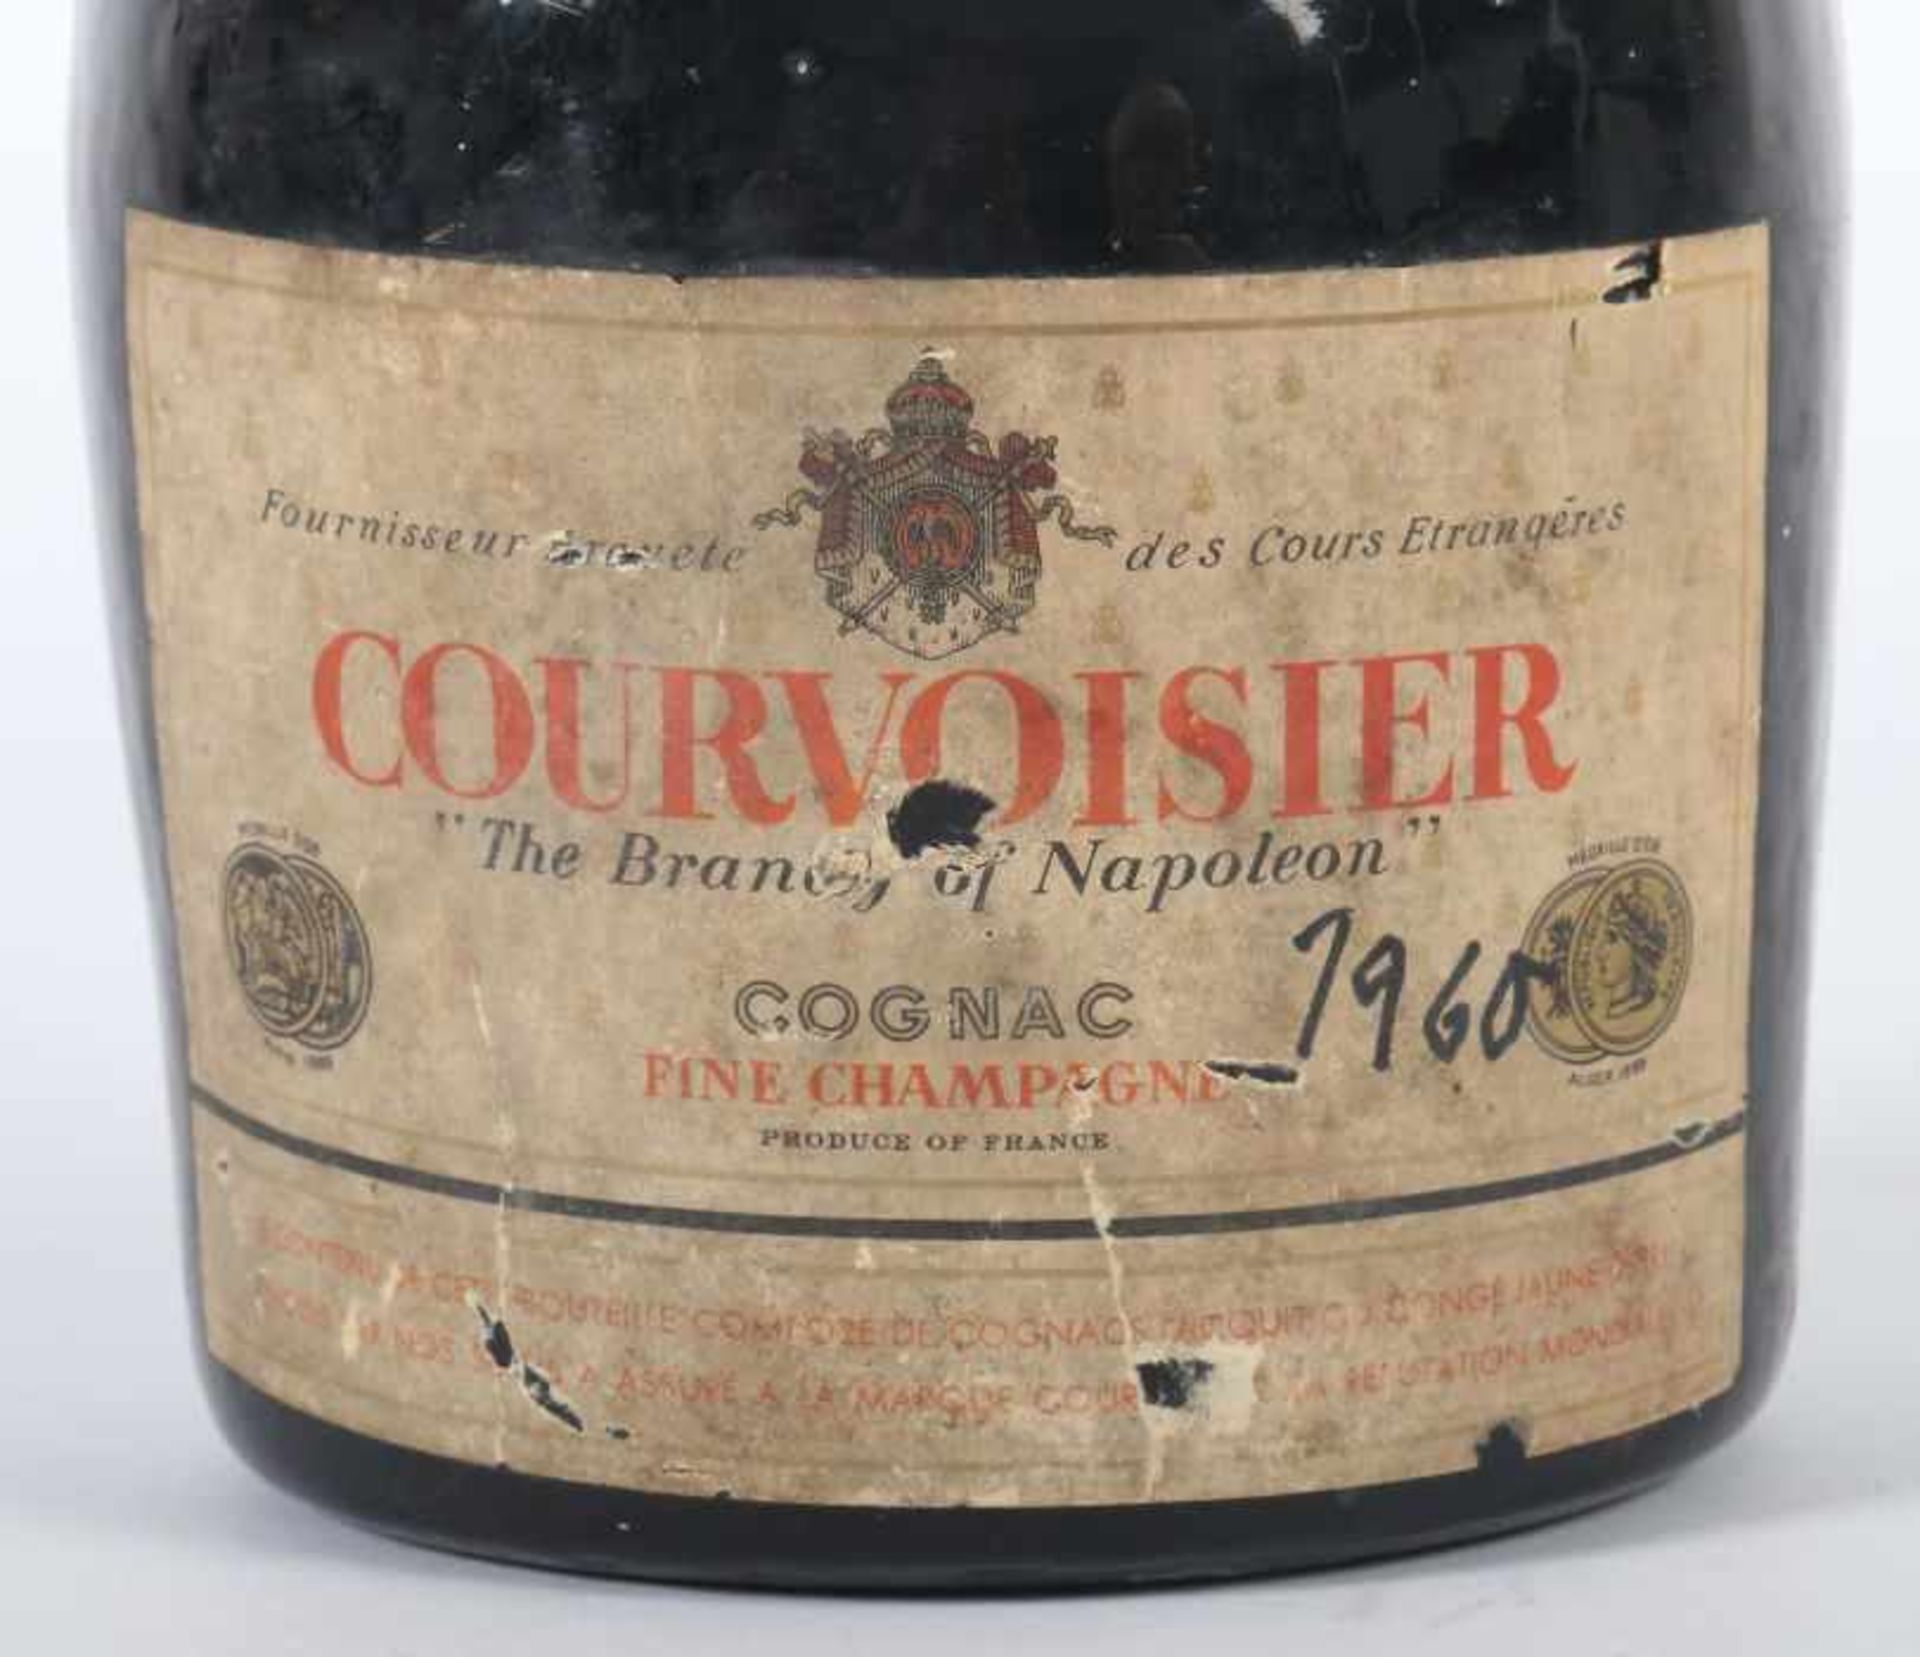 1 Flasche CourvoisierCognac, "the Brandy of Napoleon", fine Champagne, wohl 1960er Jahrgang ( - Bild 2 aus 2